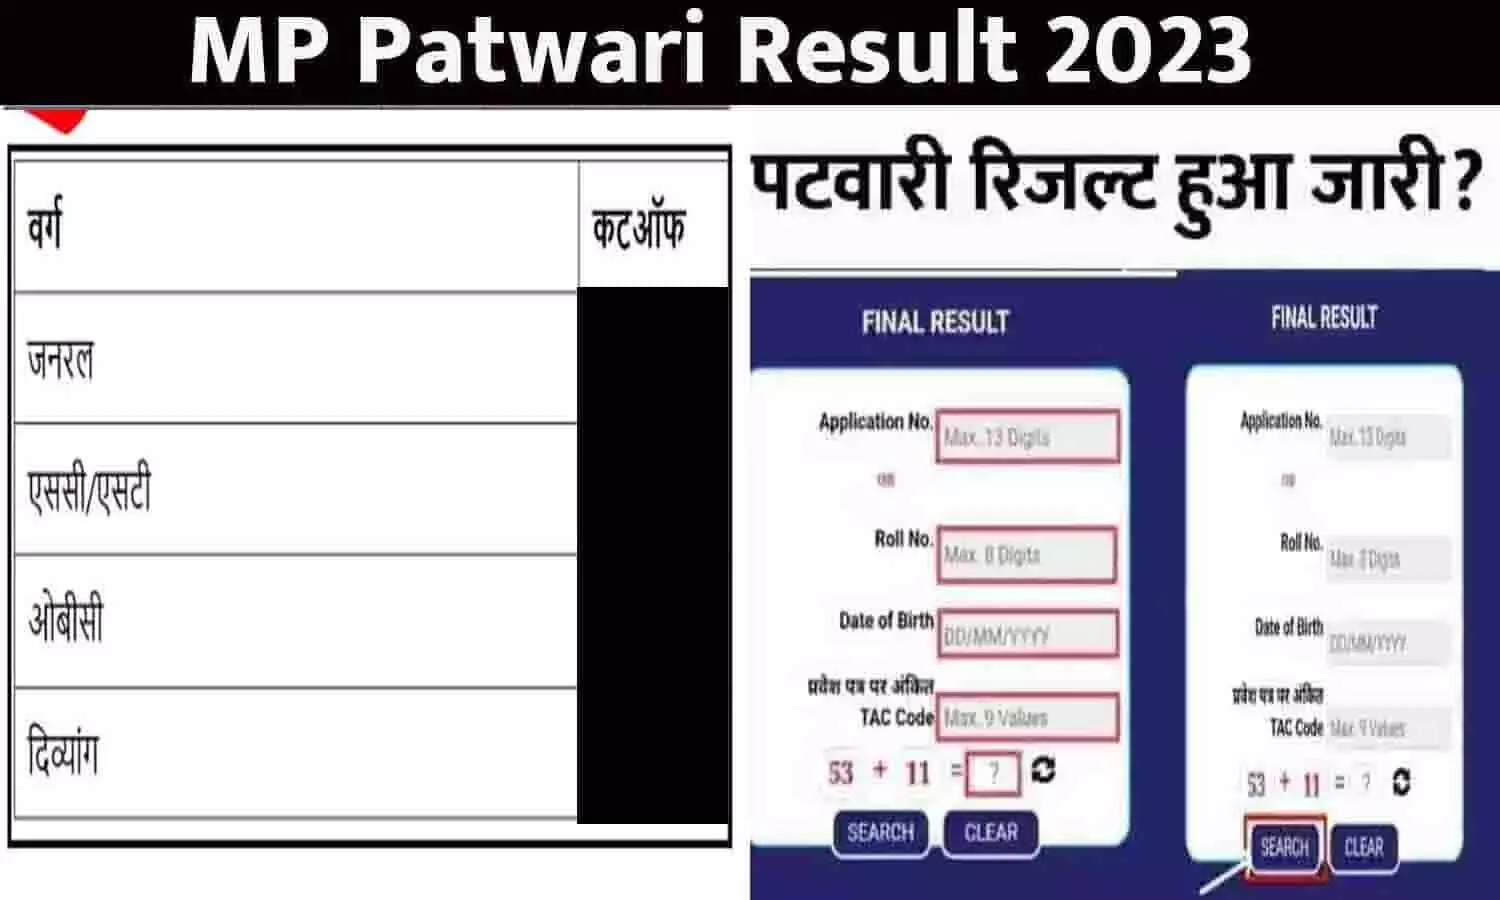 MP Patwari Result 2023 Date